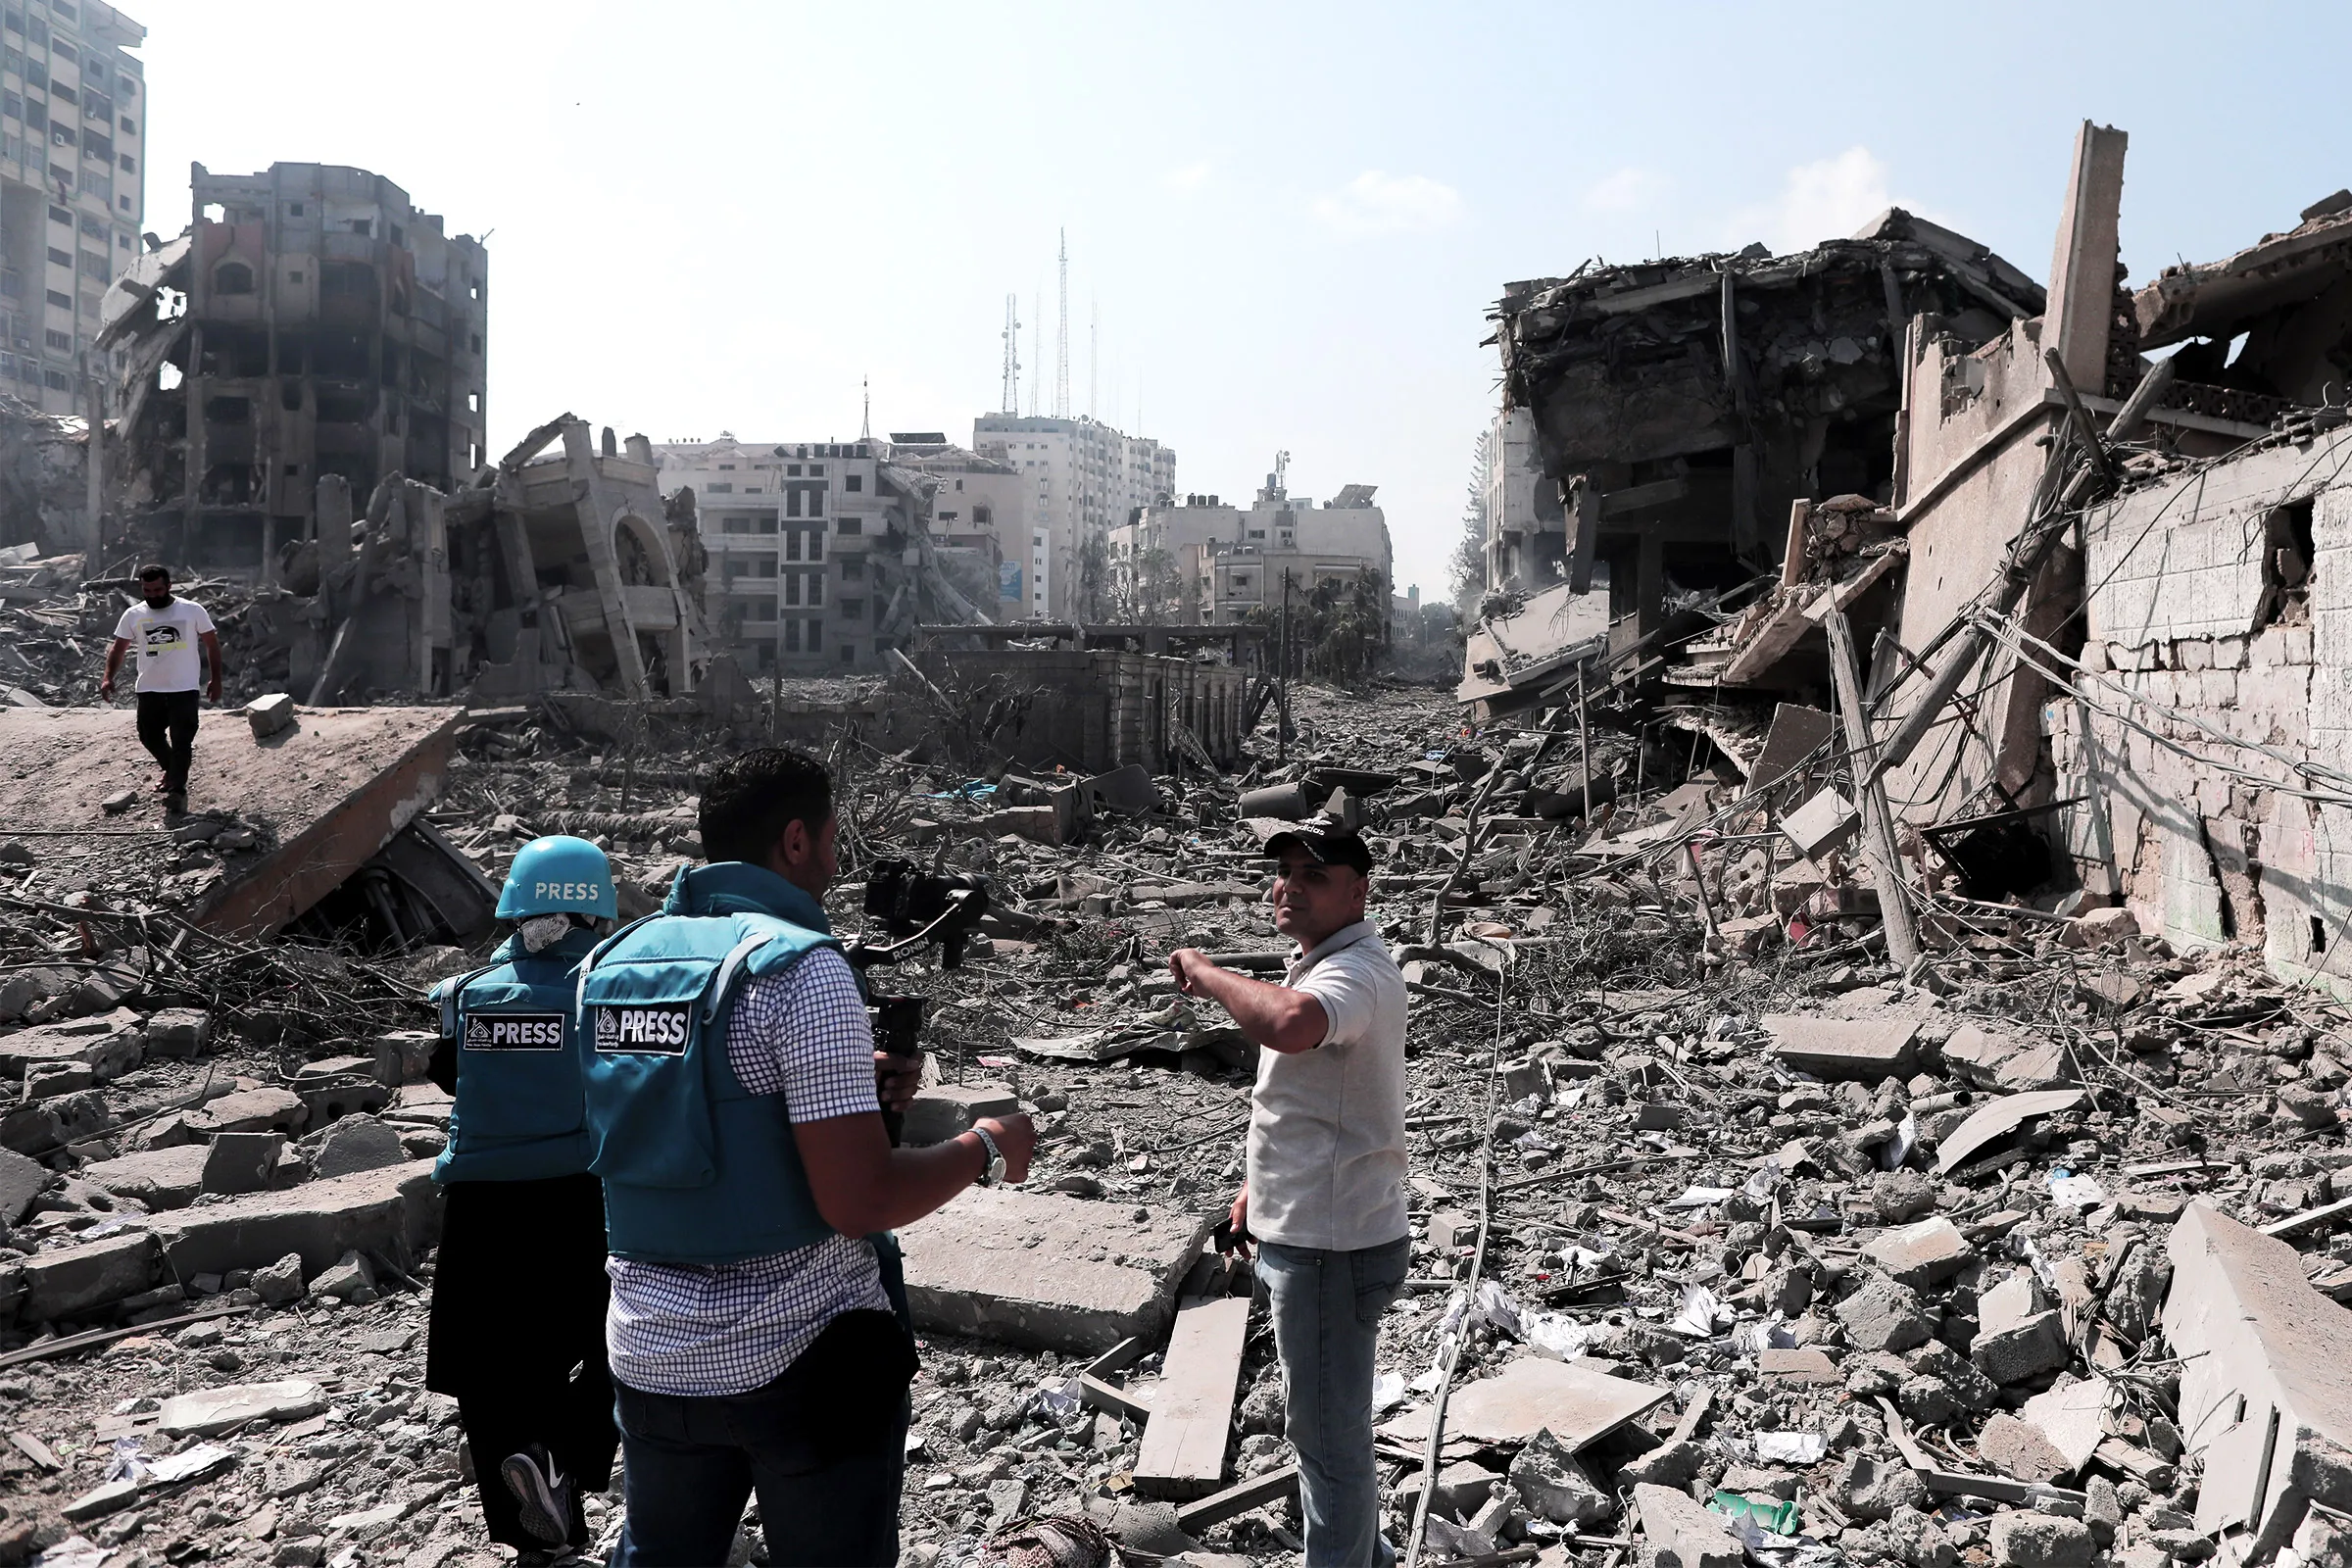 Guerra di Gaza, due giornalisti di Al Jazeera feriti da un drone israeliano: uno ha perso un piede e rischia la vita